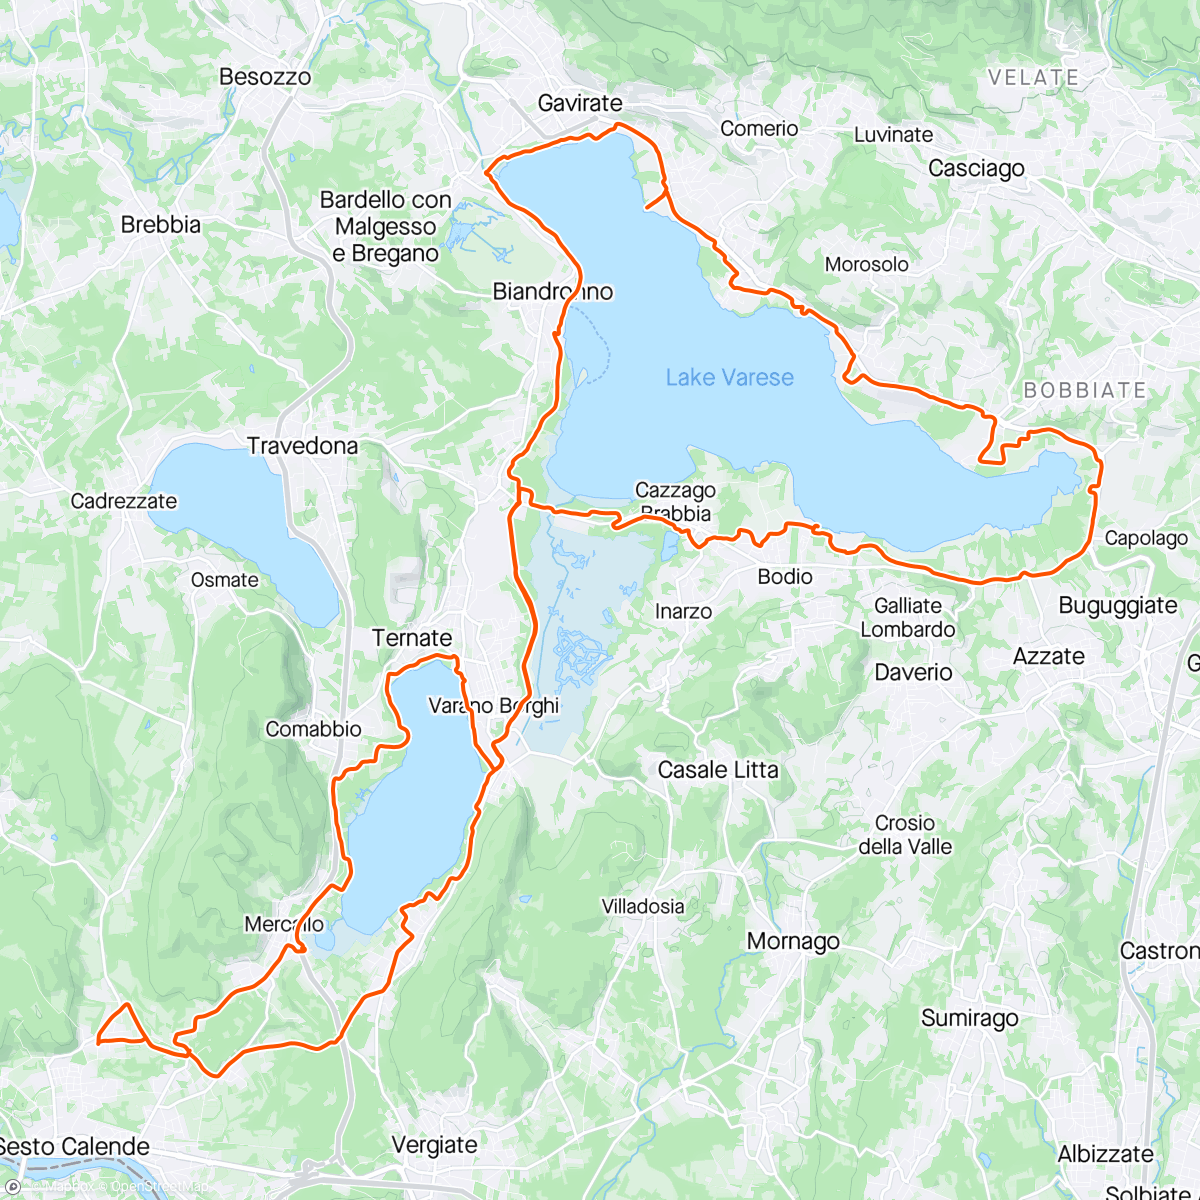 「Giro lago di Varese e Comabbio con pioggerella」活動的地圖